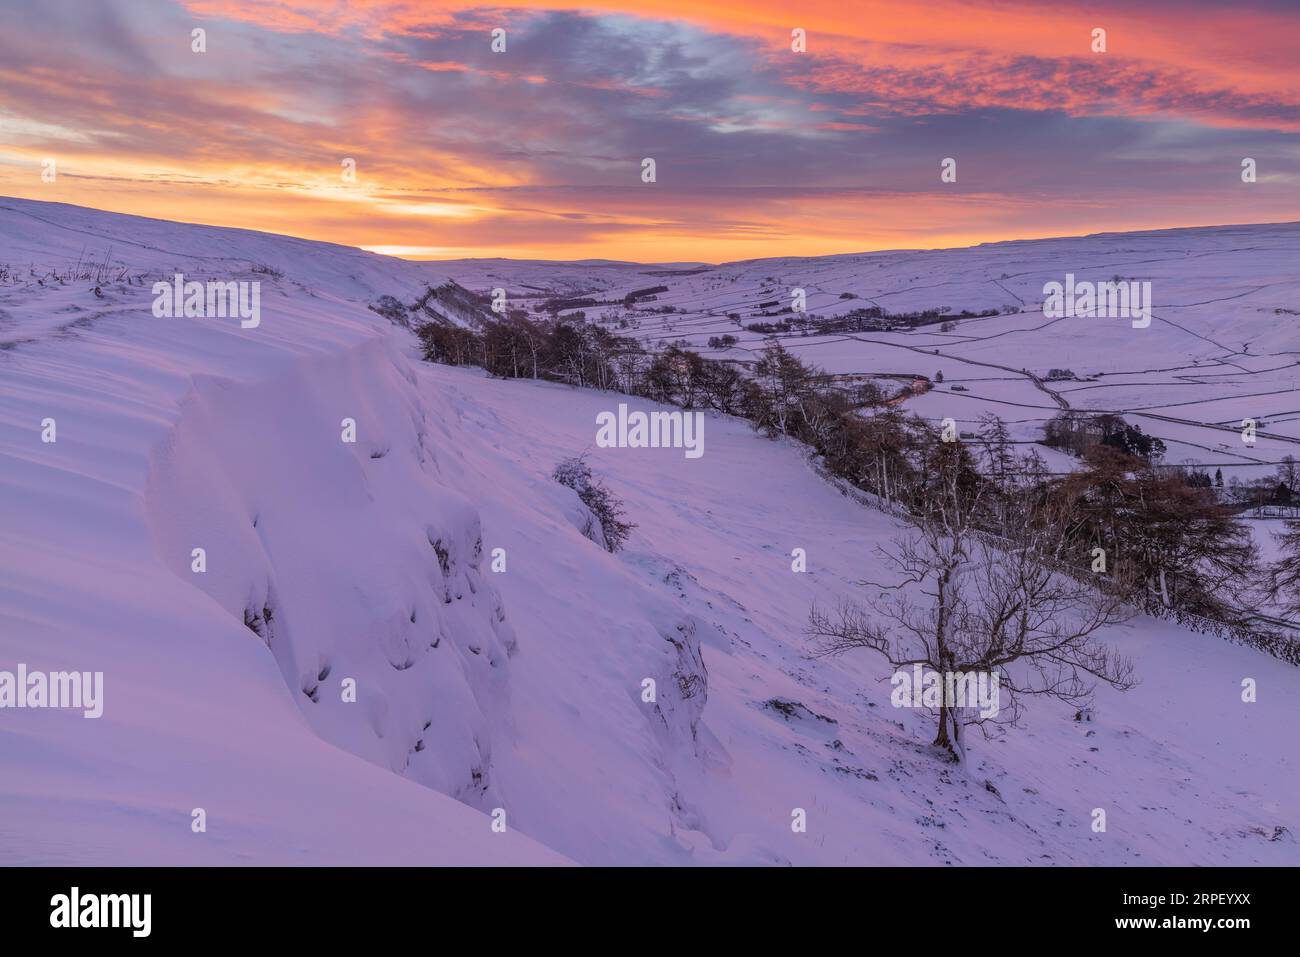 Feuriger Sonnenaufgang über dem schneebedeckten Tal der Littondale von einem Aussichtspunkt über Arncliffe Dorf. Littondale, Yorkshire Dales, North Yorkshire, UK Stockfoto